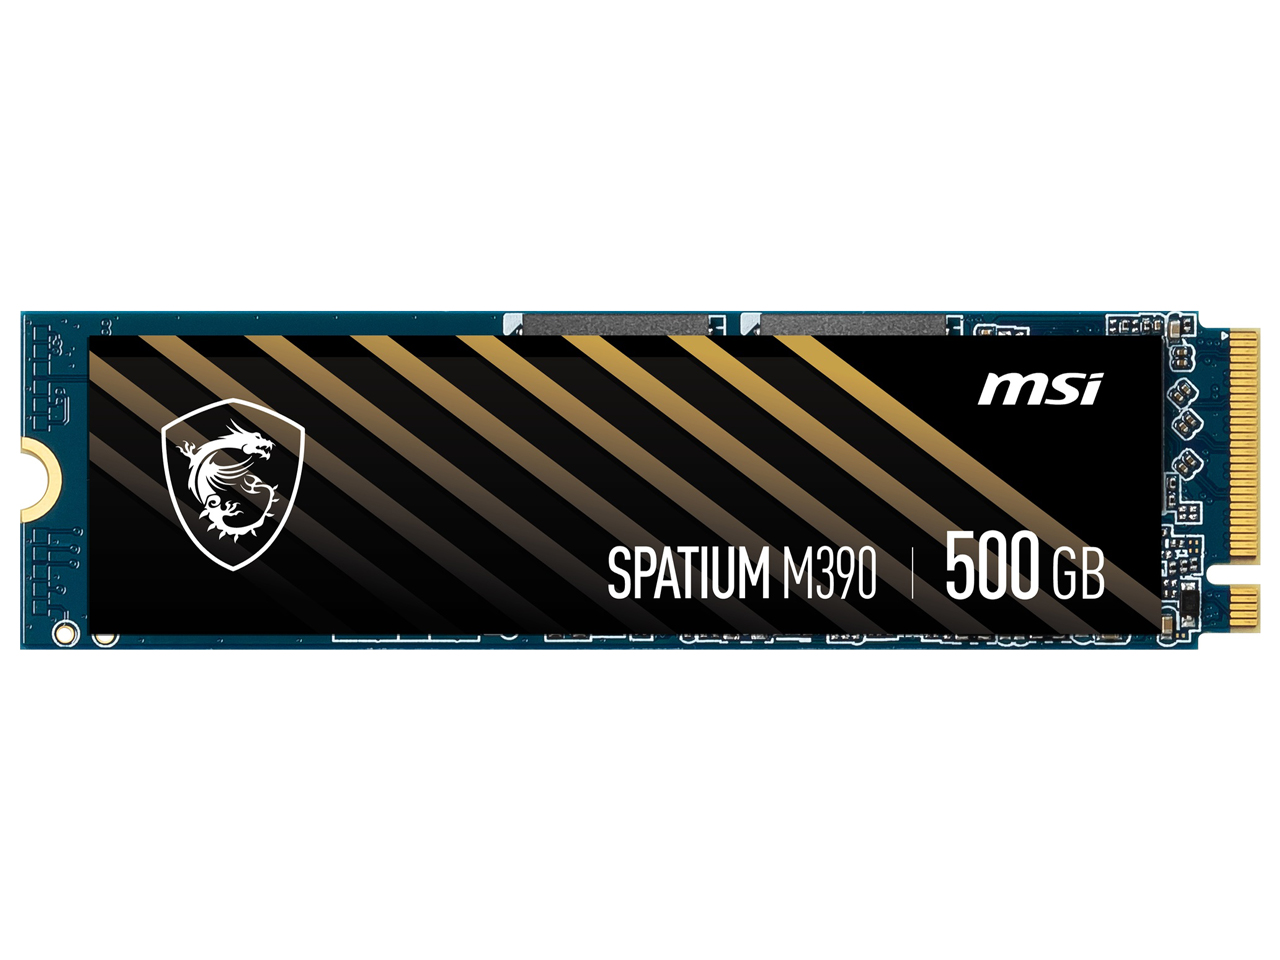 SPATIUM M390 NVMe M.2 500GB